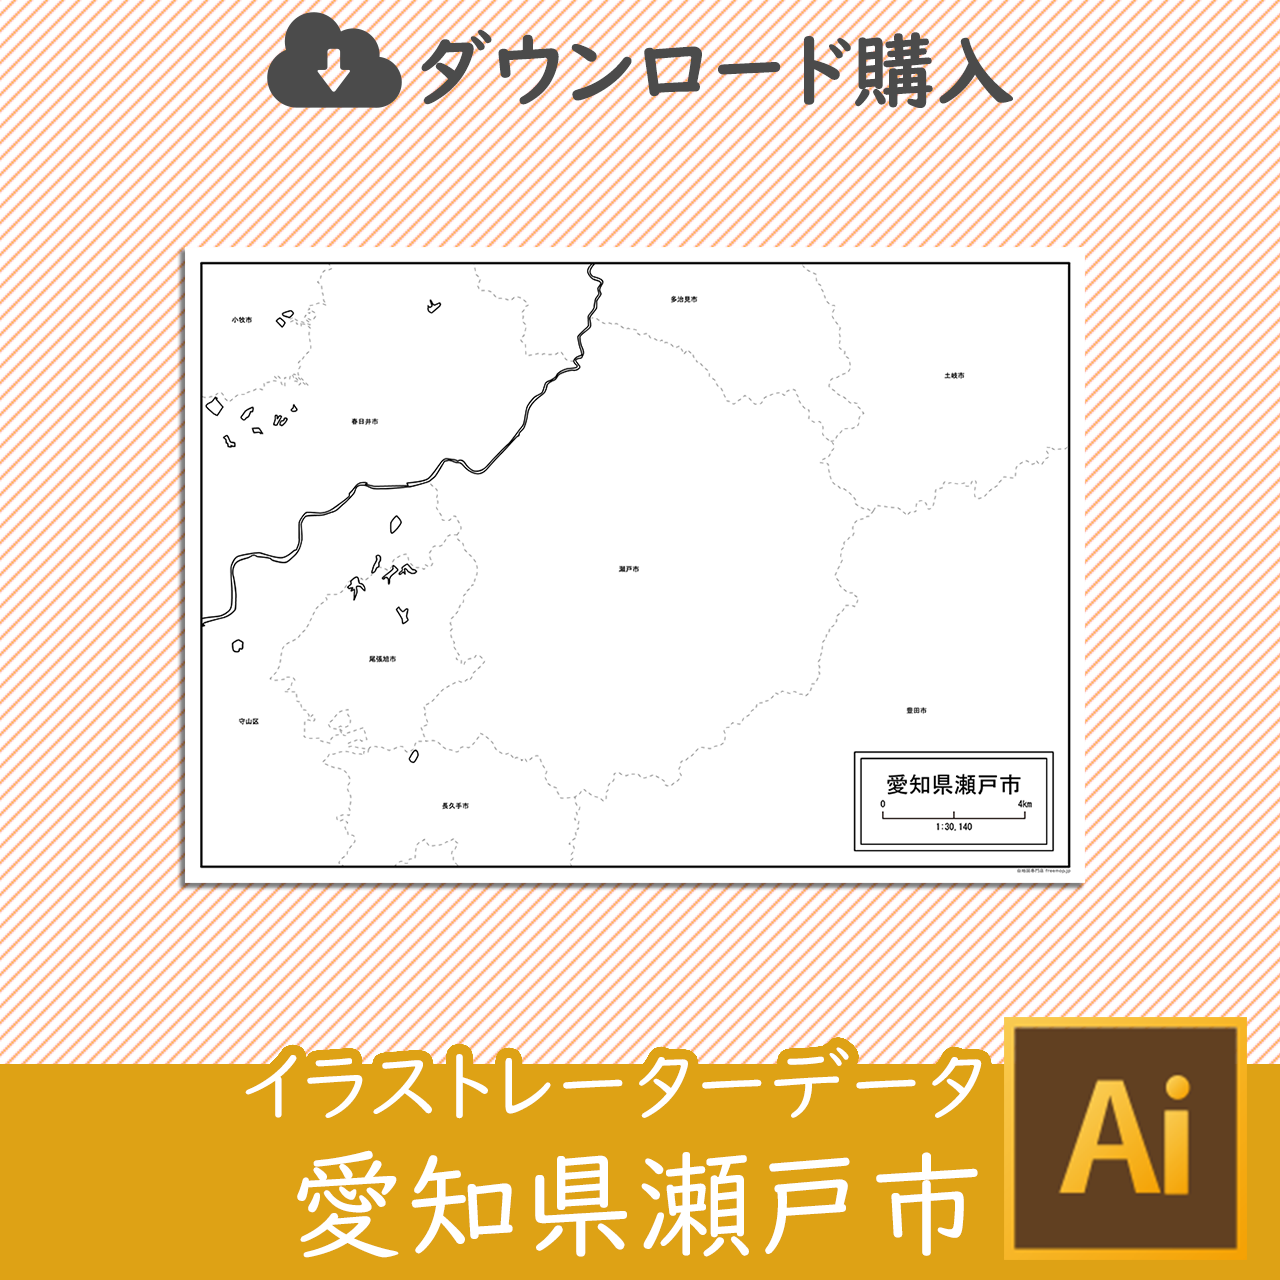 瀬戸市のaiデータのサムネイル画像